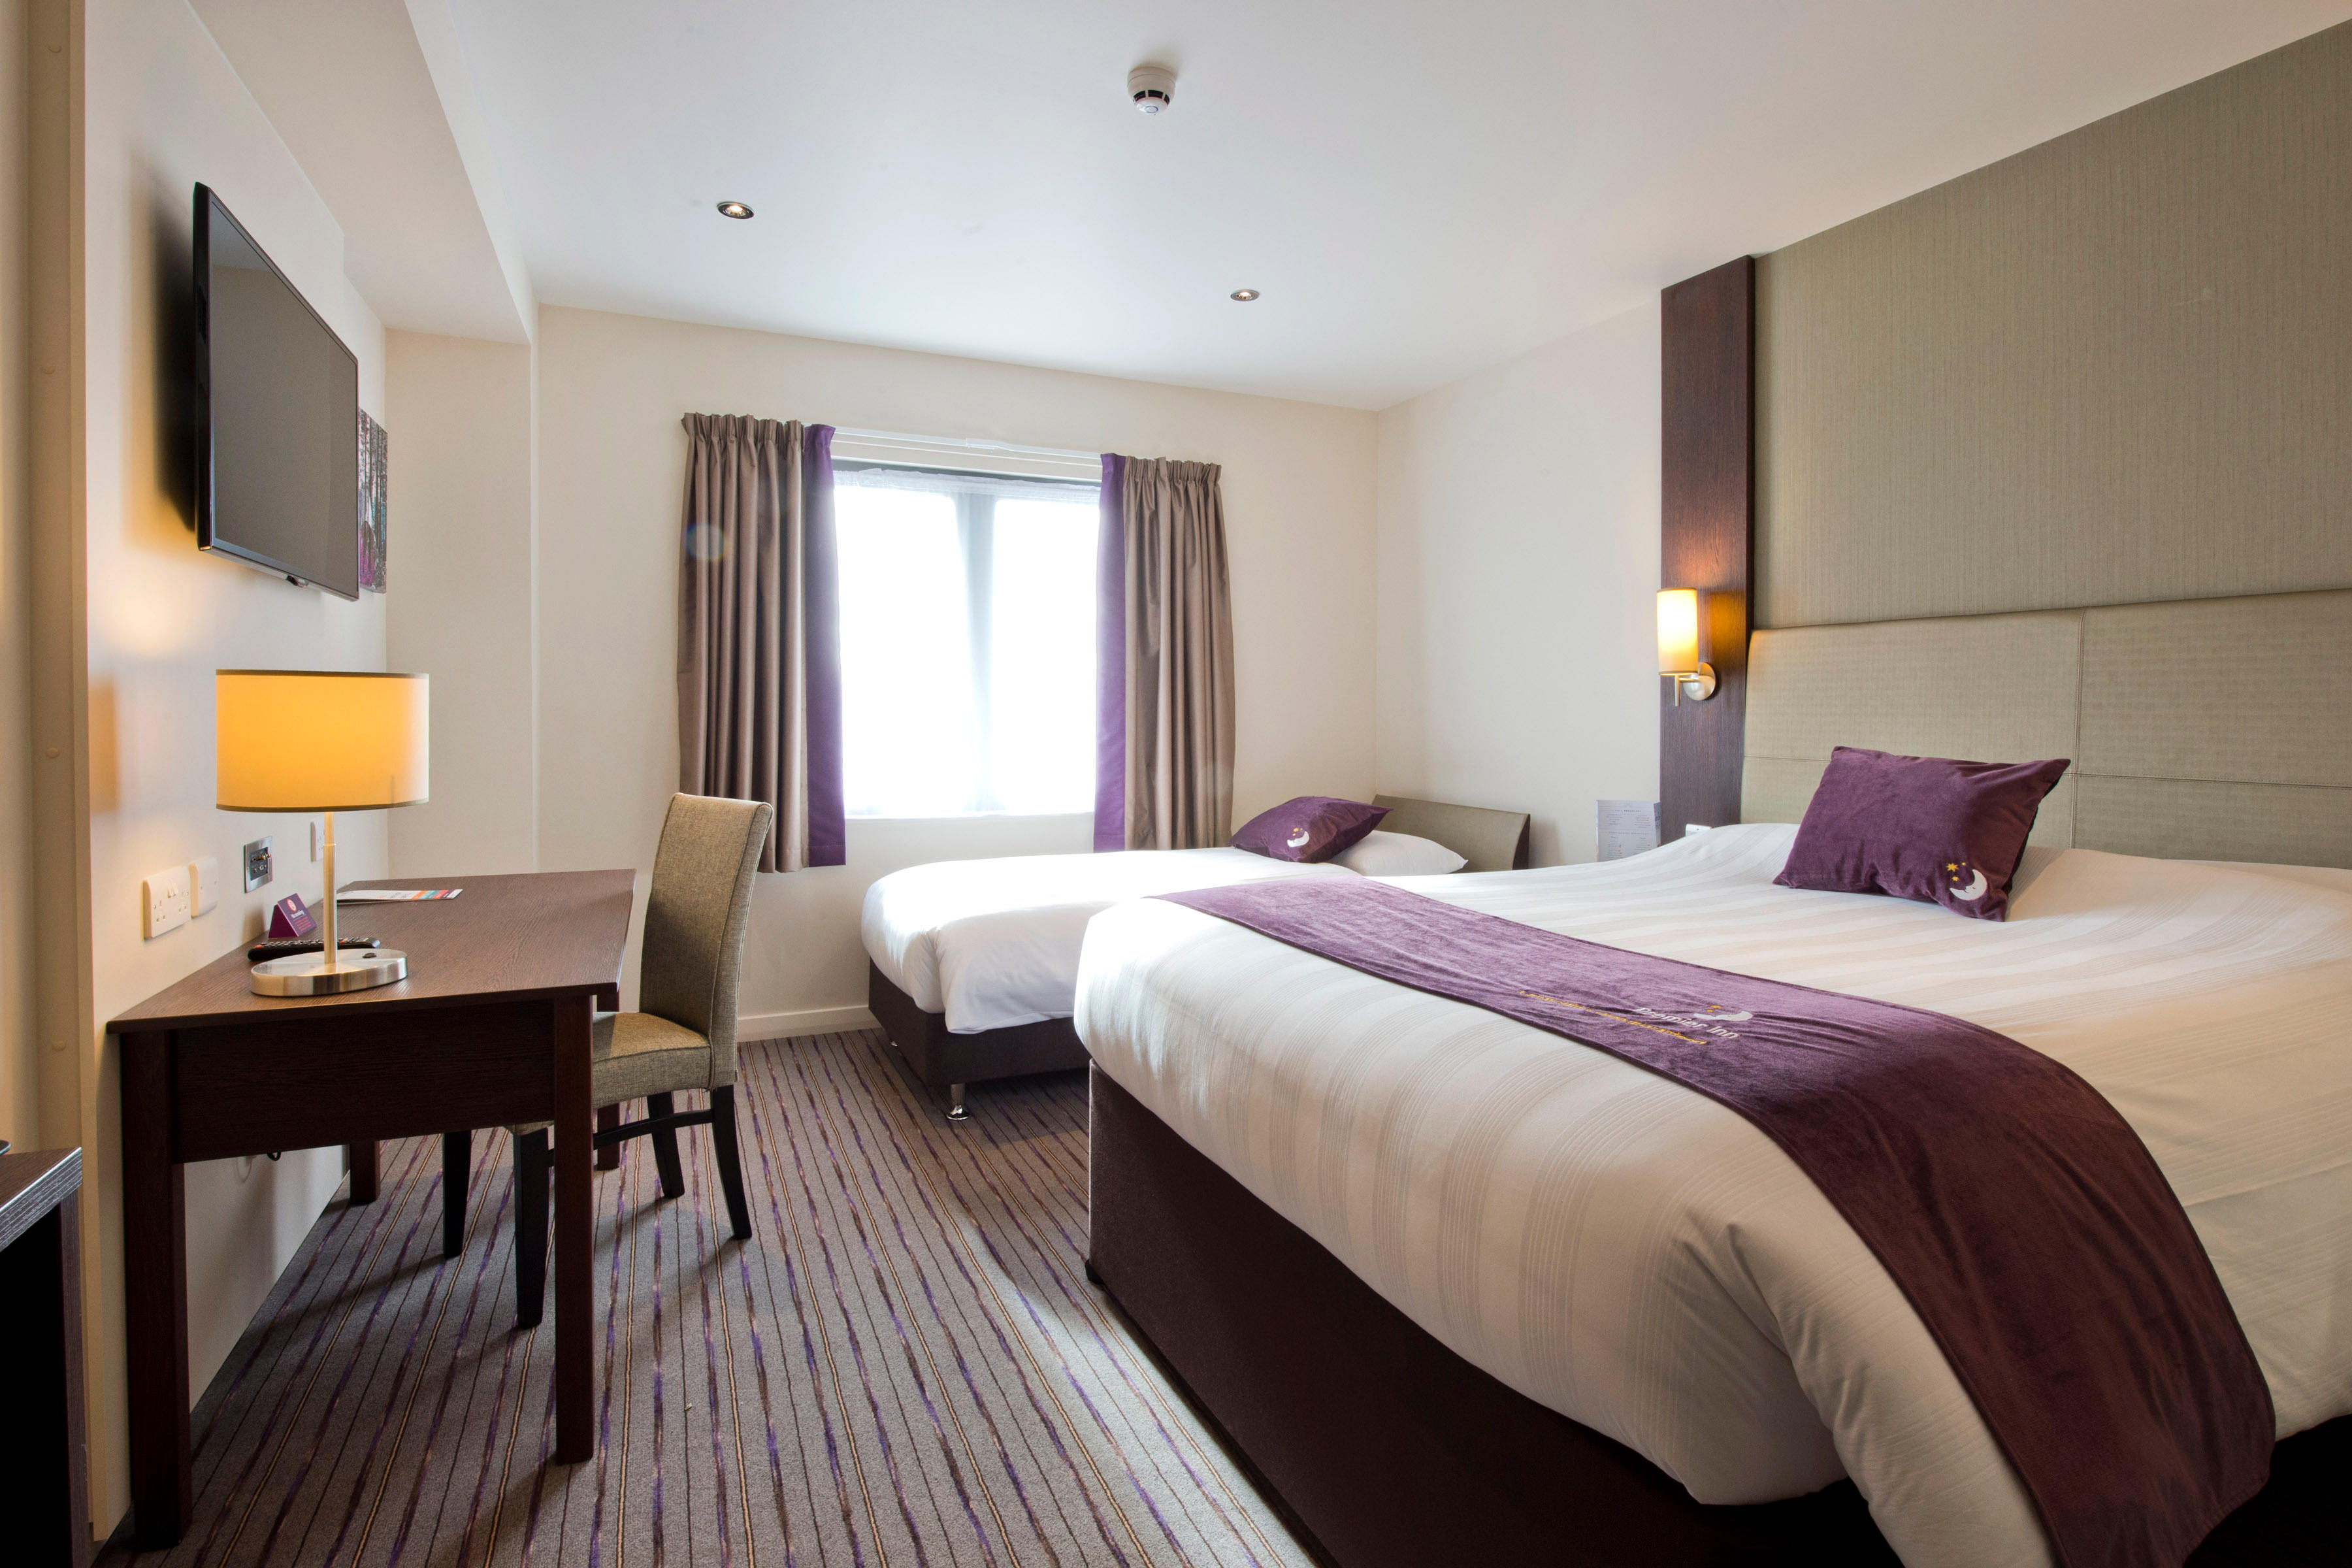 Premier Inn bedroom Premier Inn Exeter City Centre hotel Exeter 03333 219068